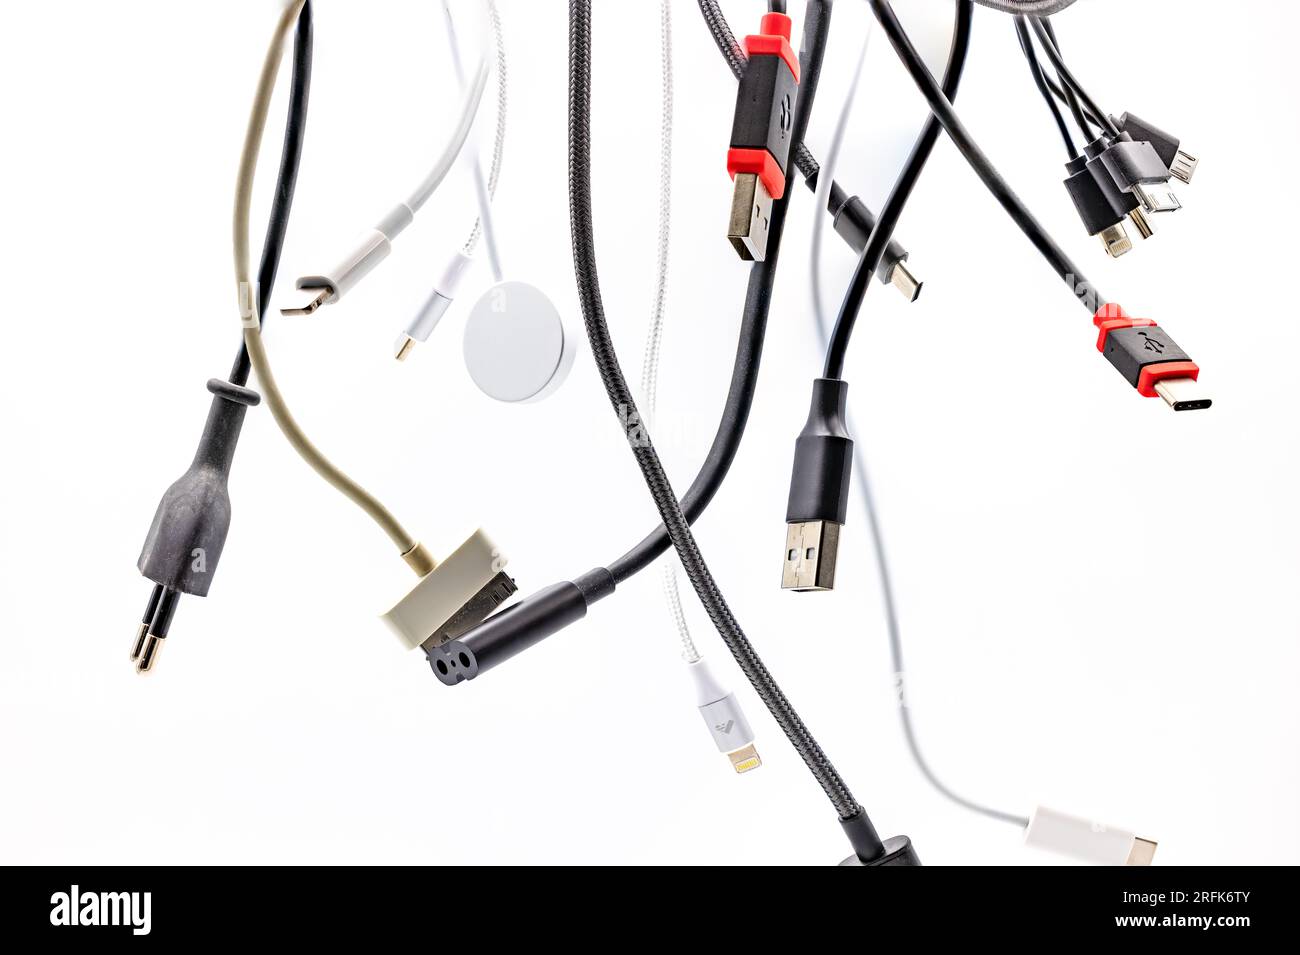 Caos y confusión con enchufes, zócalos y cables USB aislados contra un fondo blanco con apilamiento de enfoque Foto de stock